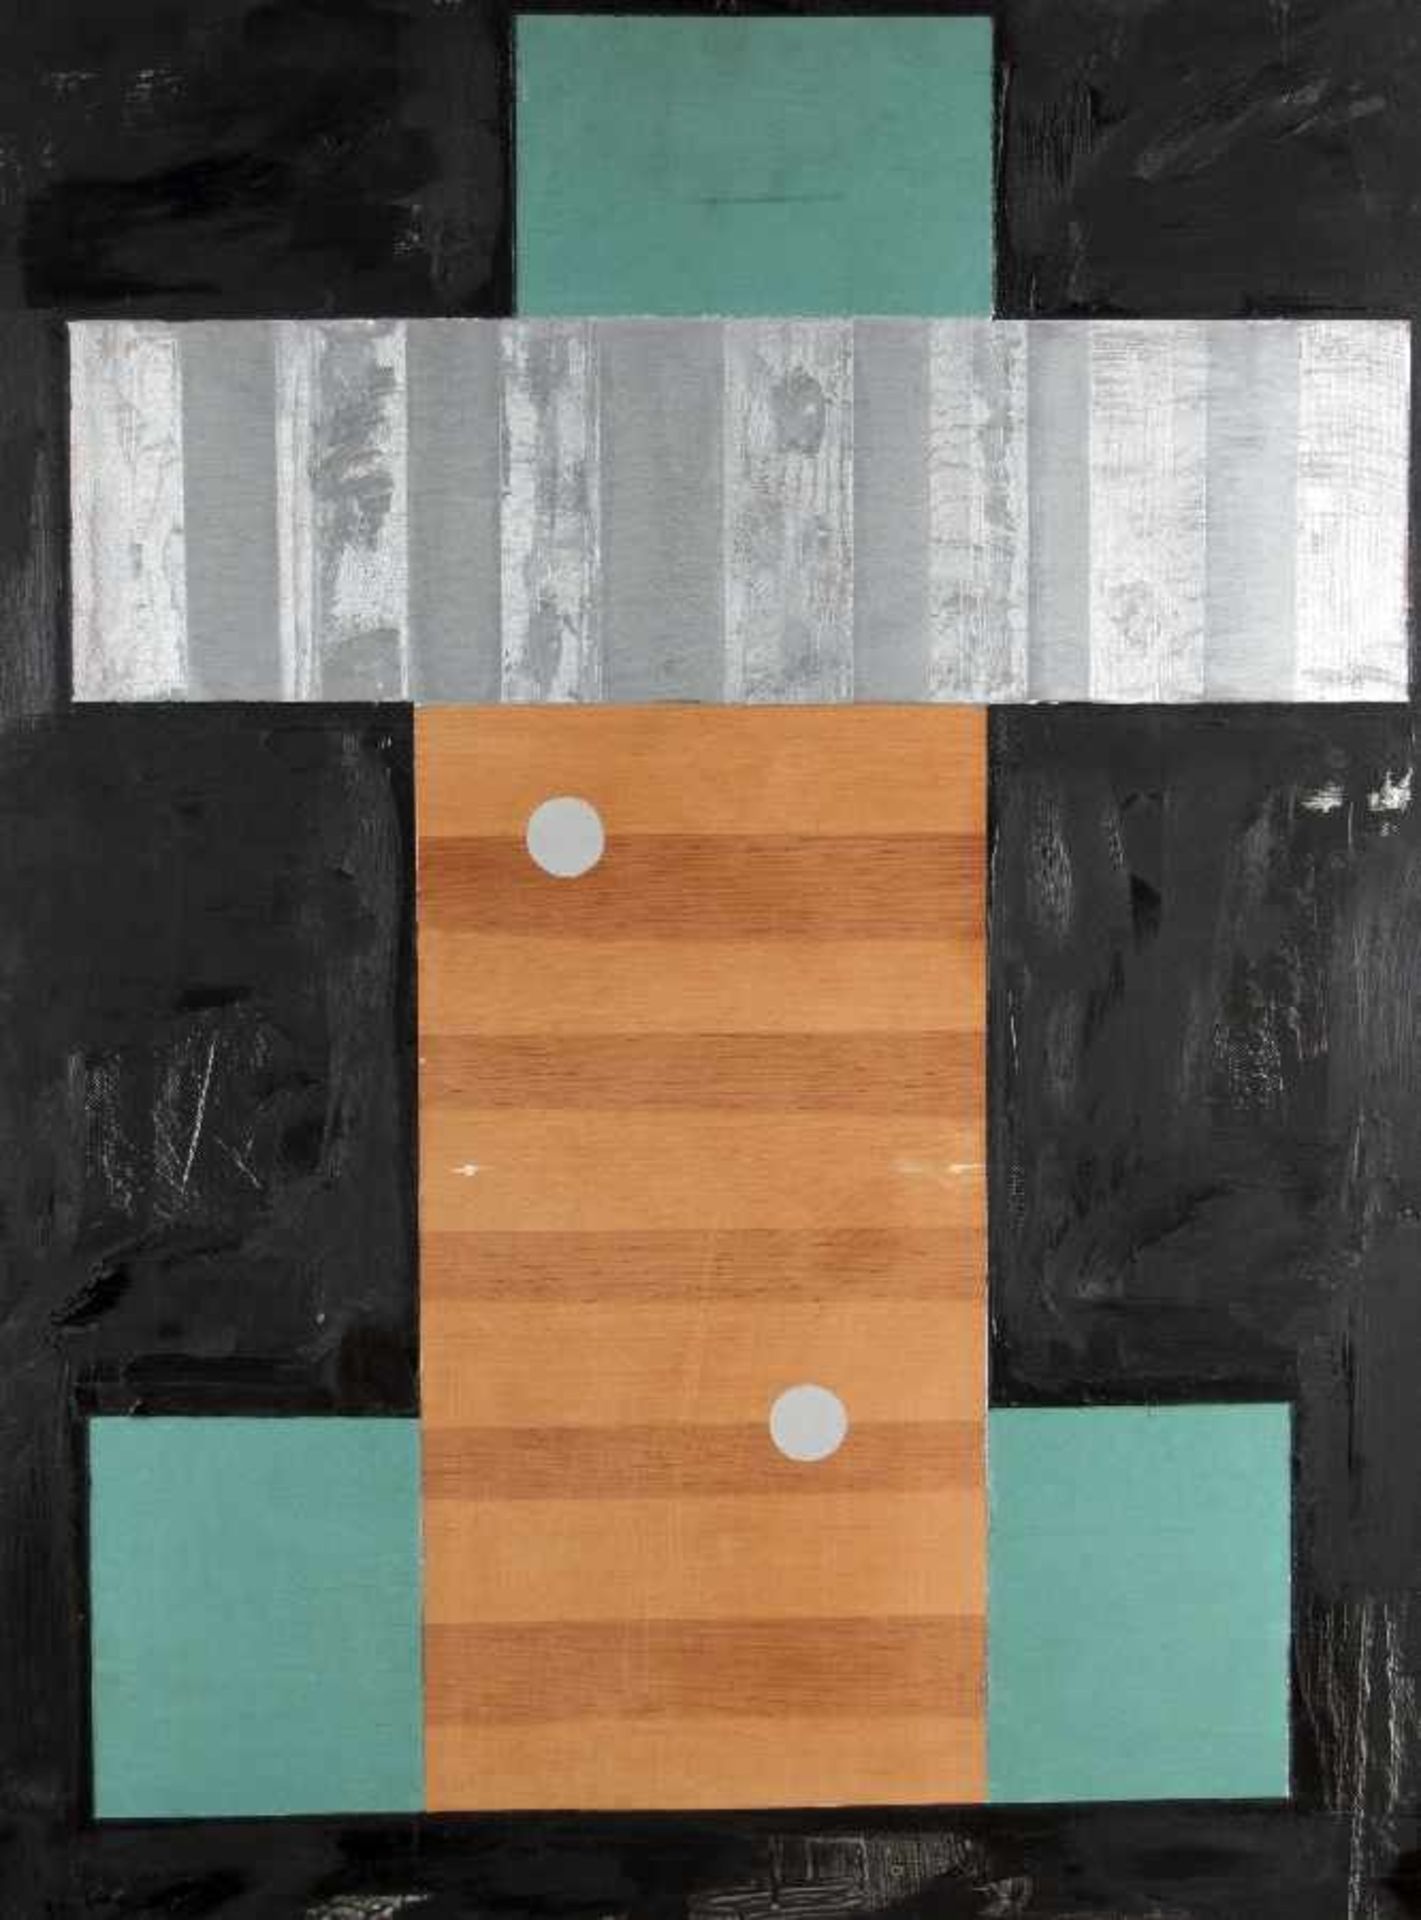 Bruce Robbins1948 PhiladelphiaStaekÖl auf Holz; H 80 cm, B 60 cm; verso signiert und datiert "